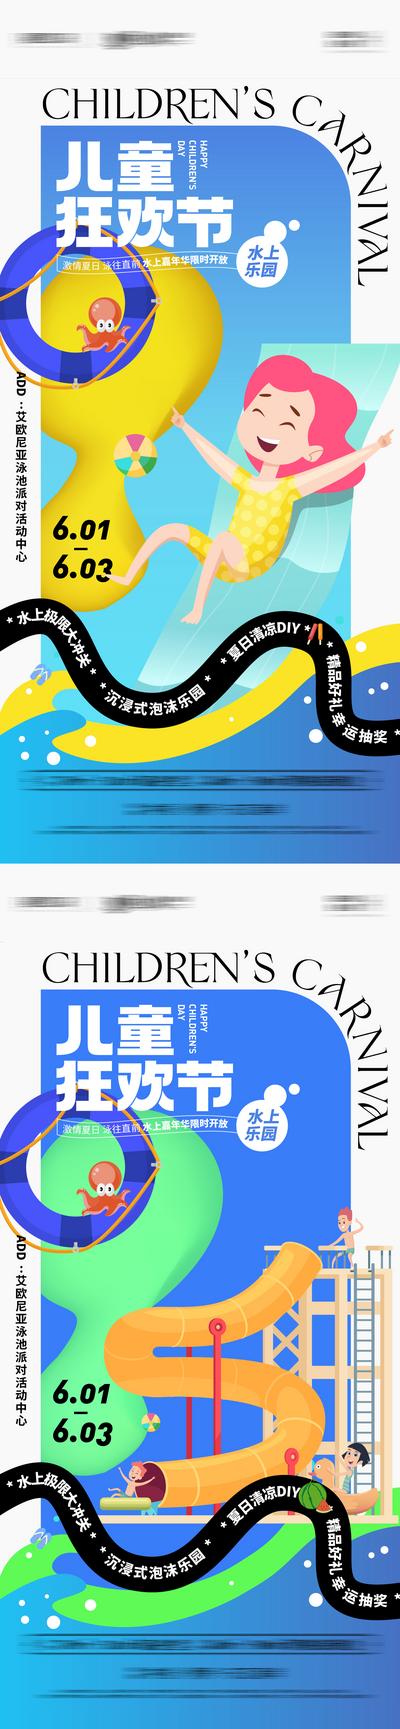 【南门网】海报 地产 公历节日 六一 儿童节 水上乐园 嘉年华 滑梯 游泳 系列